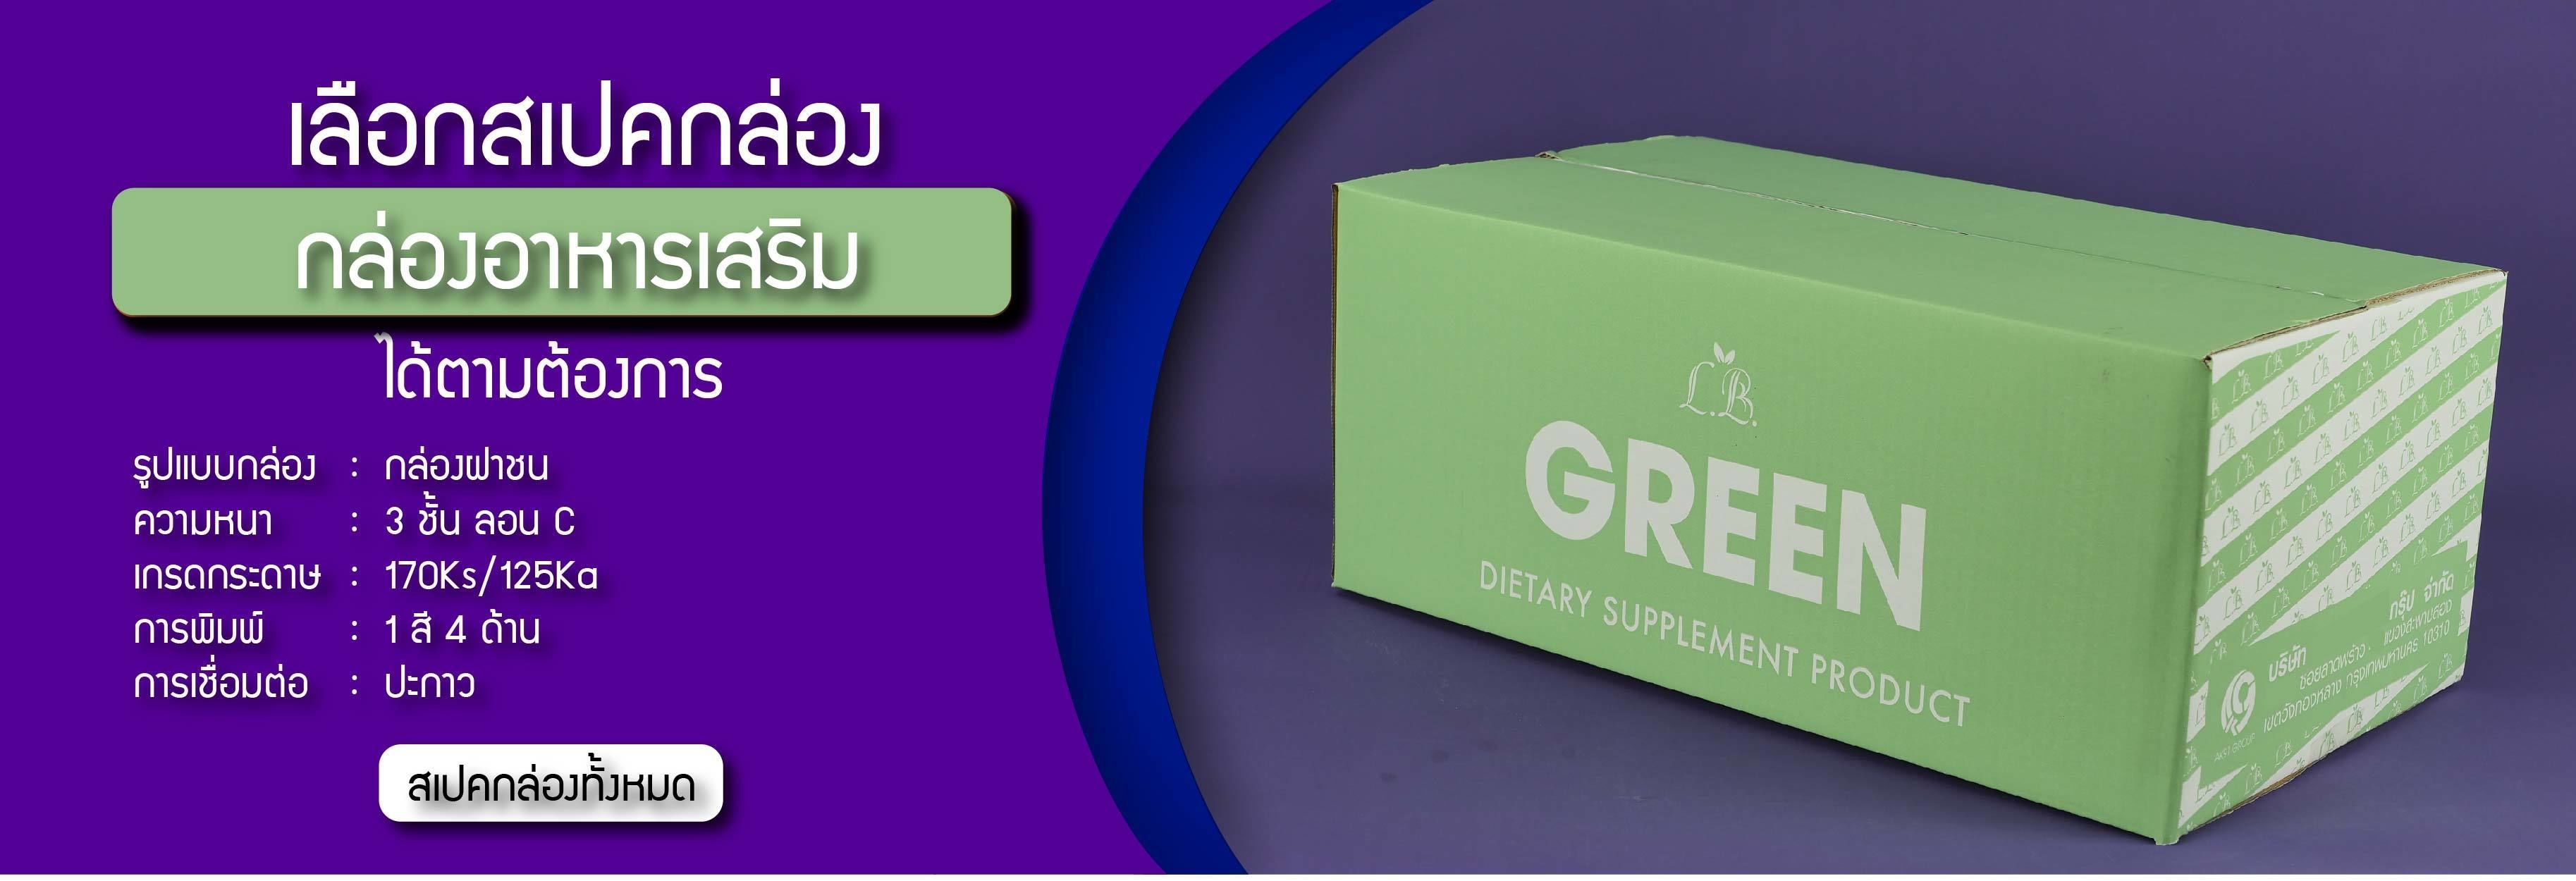 สเปคกล่องลูกฟูกงานอาหารเสริมอาหารเสริมLB GREEN Dietary